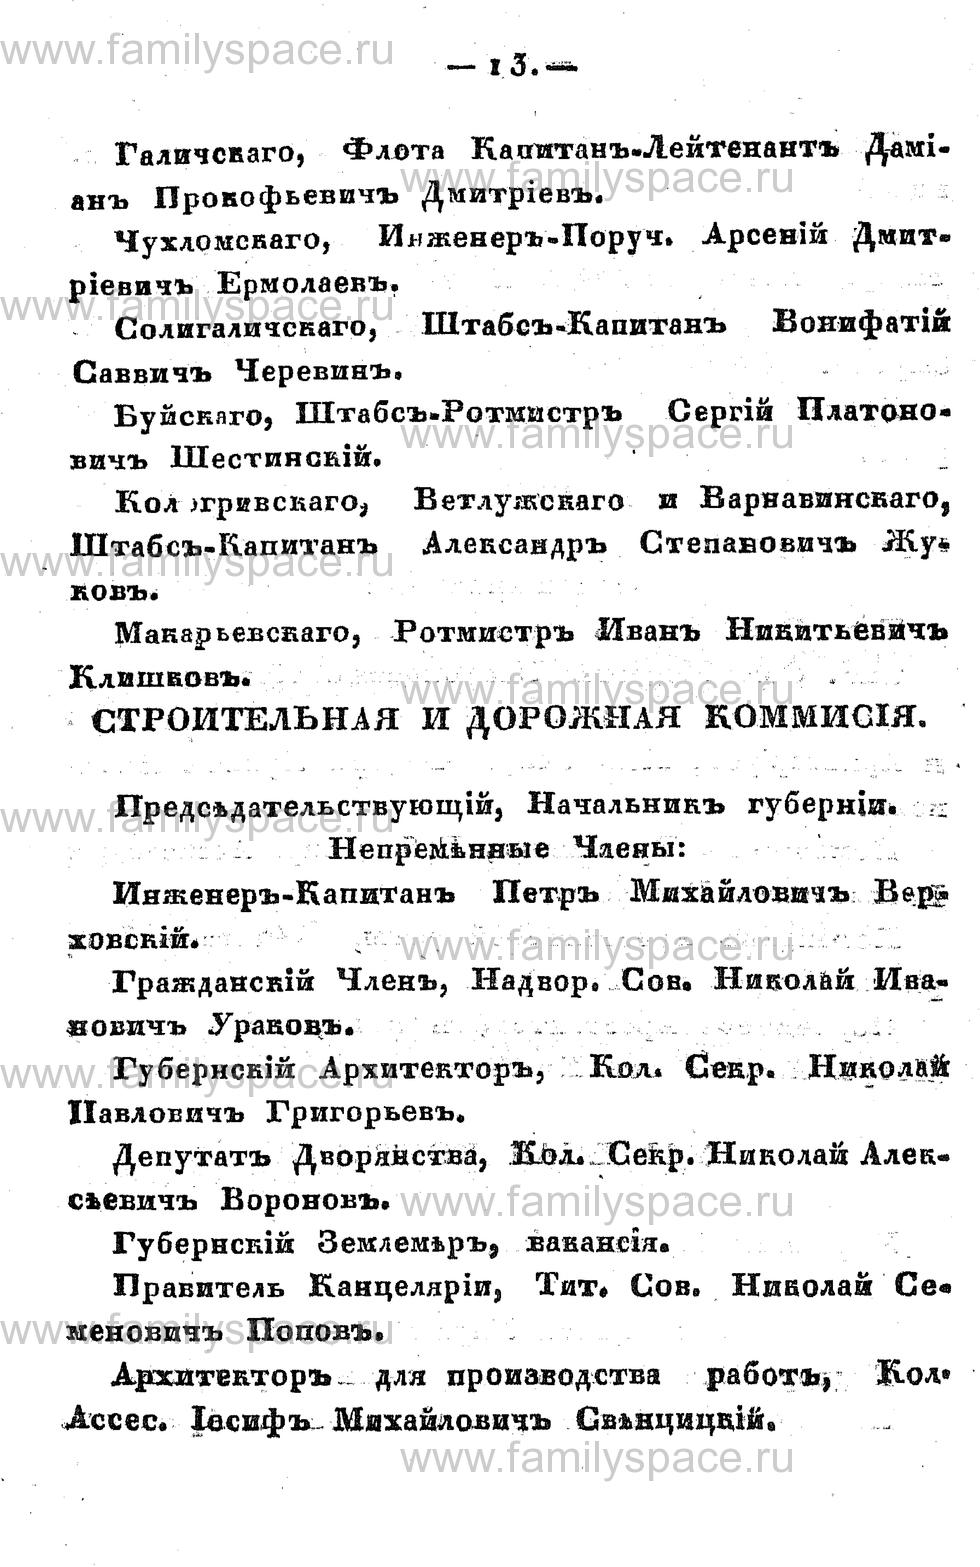 Поиск по фамилии - Памятная книжка Костромской губернии на 1857 год, страница 13